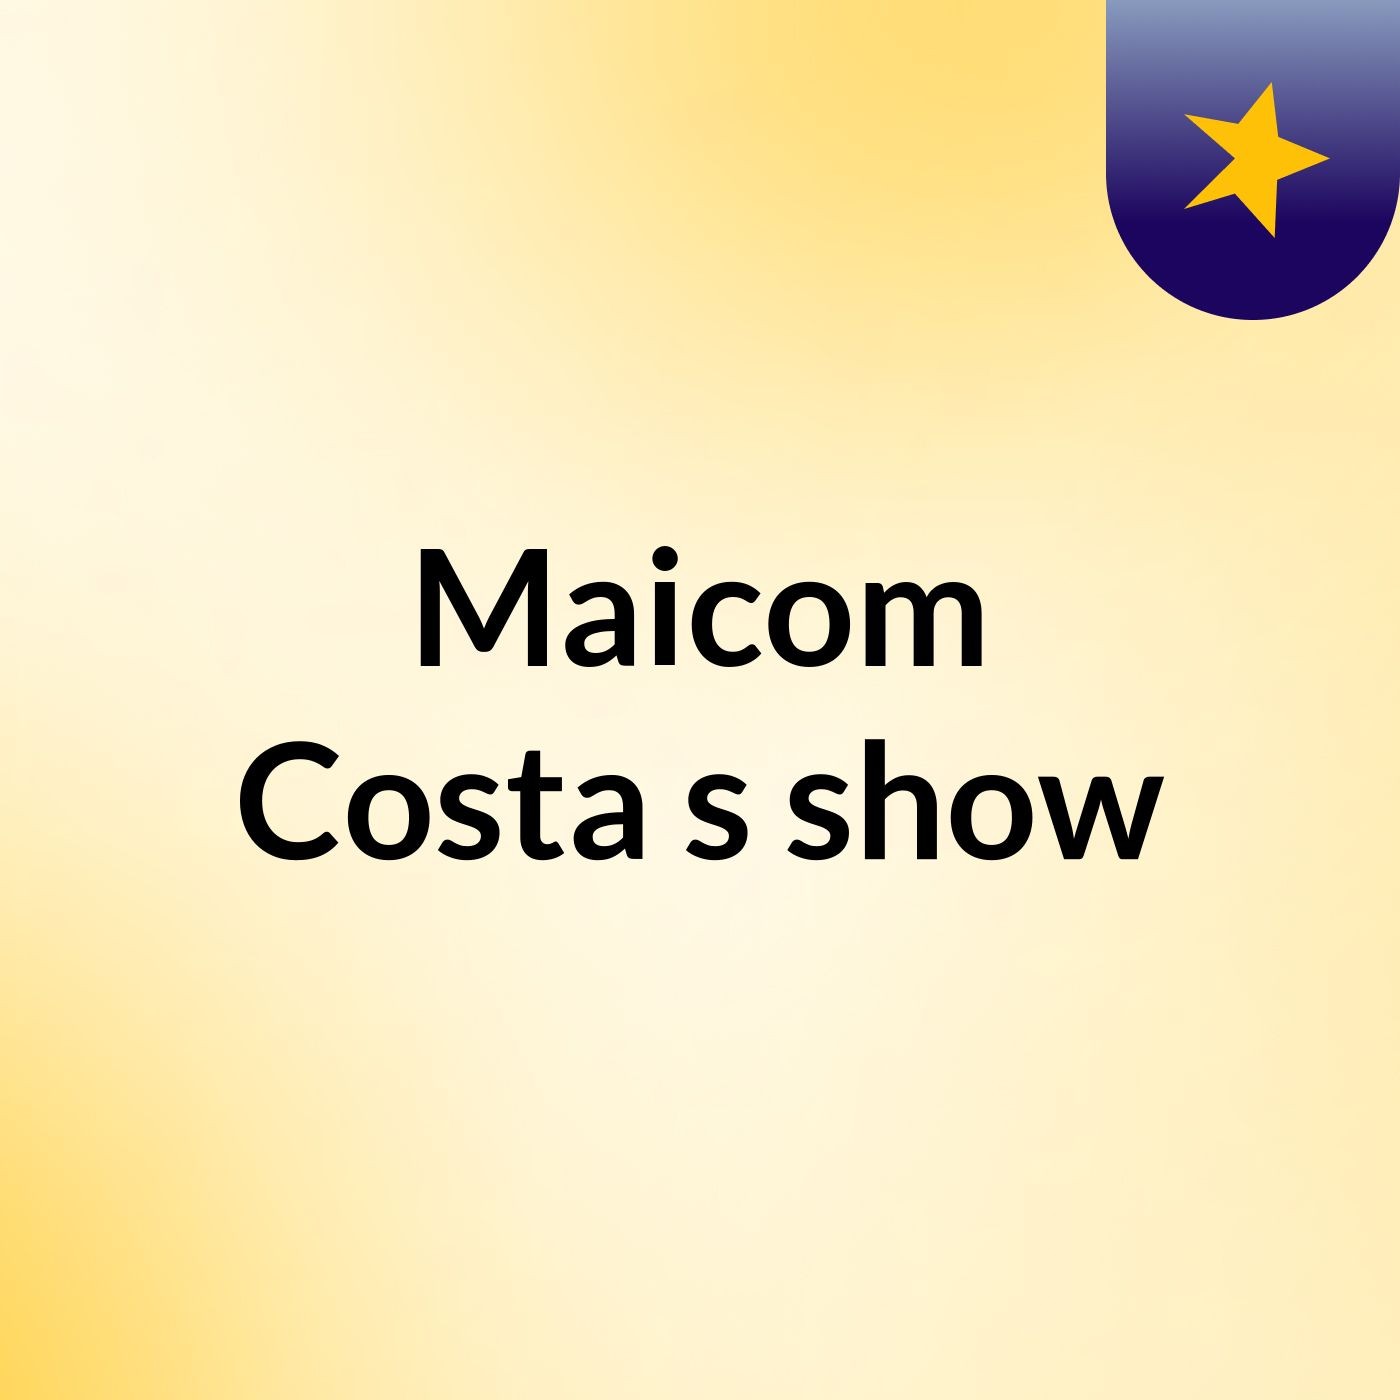 Maicom Costa's show